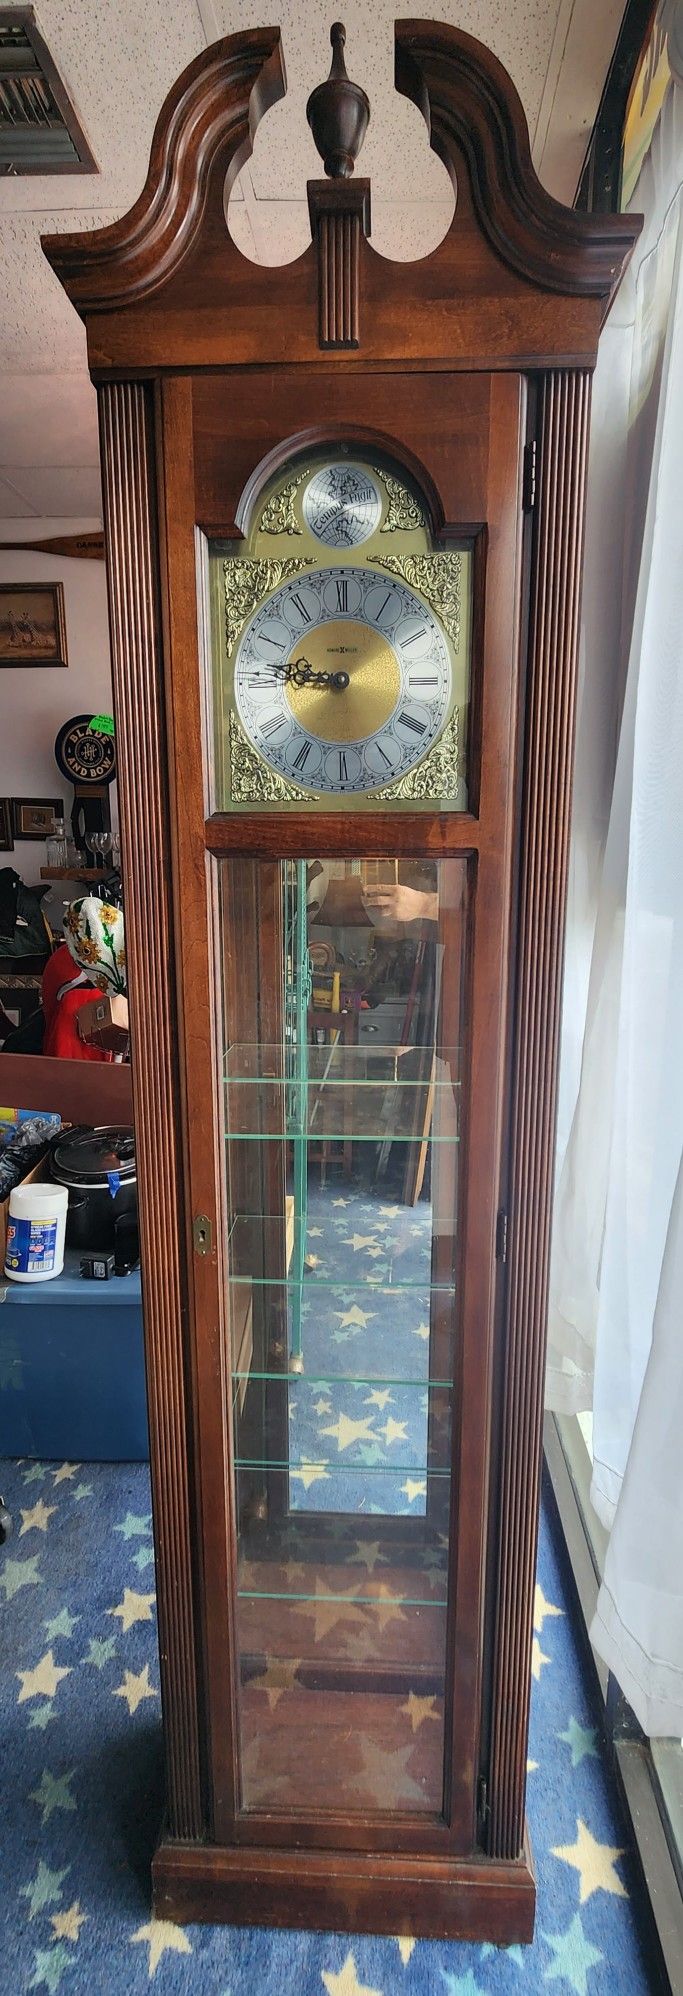 Howard Miller Cherish Curio Lighted Cabinet Floor Clock Good Condition Missing Key